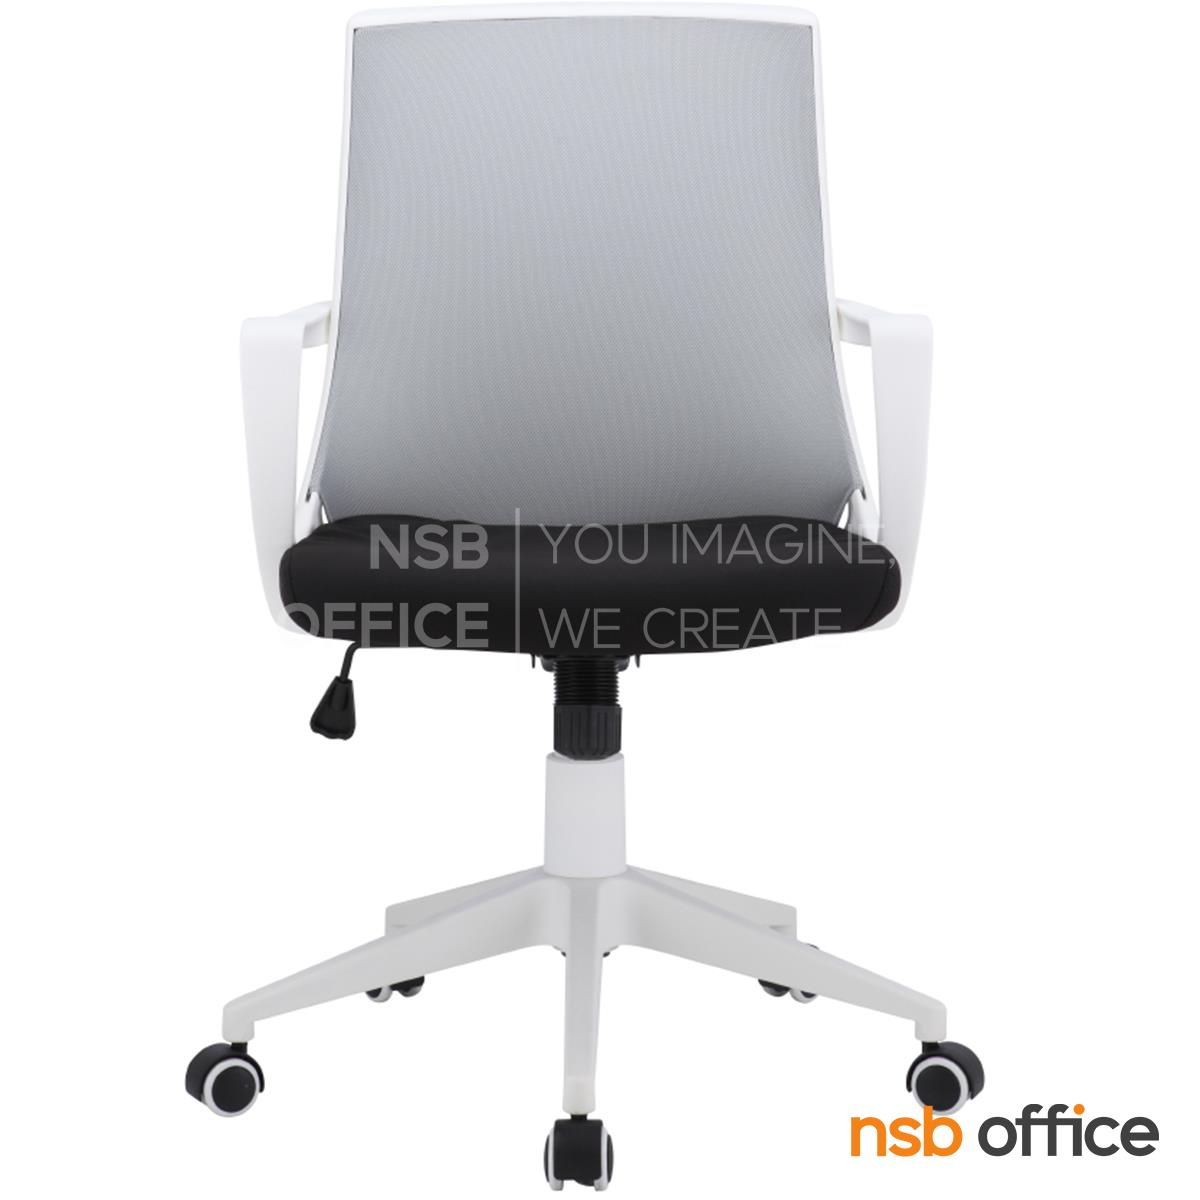 เก้าอี้สำนักงานหลังเน็ต  รุ่น Maddox (แมดดอกซ์)  ขาพลาสติก